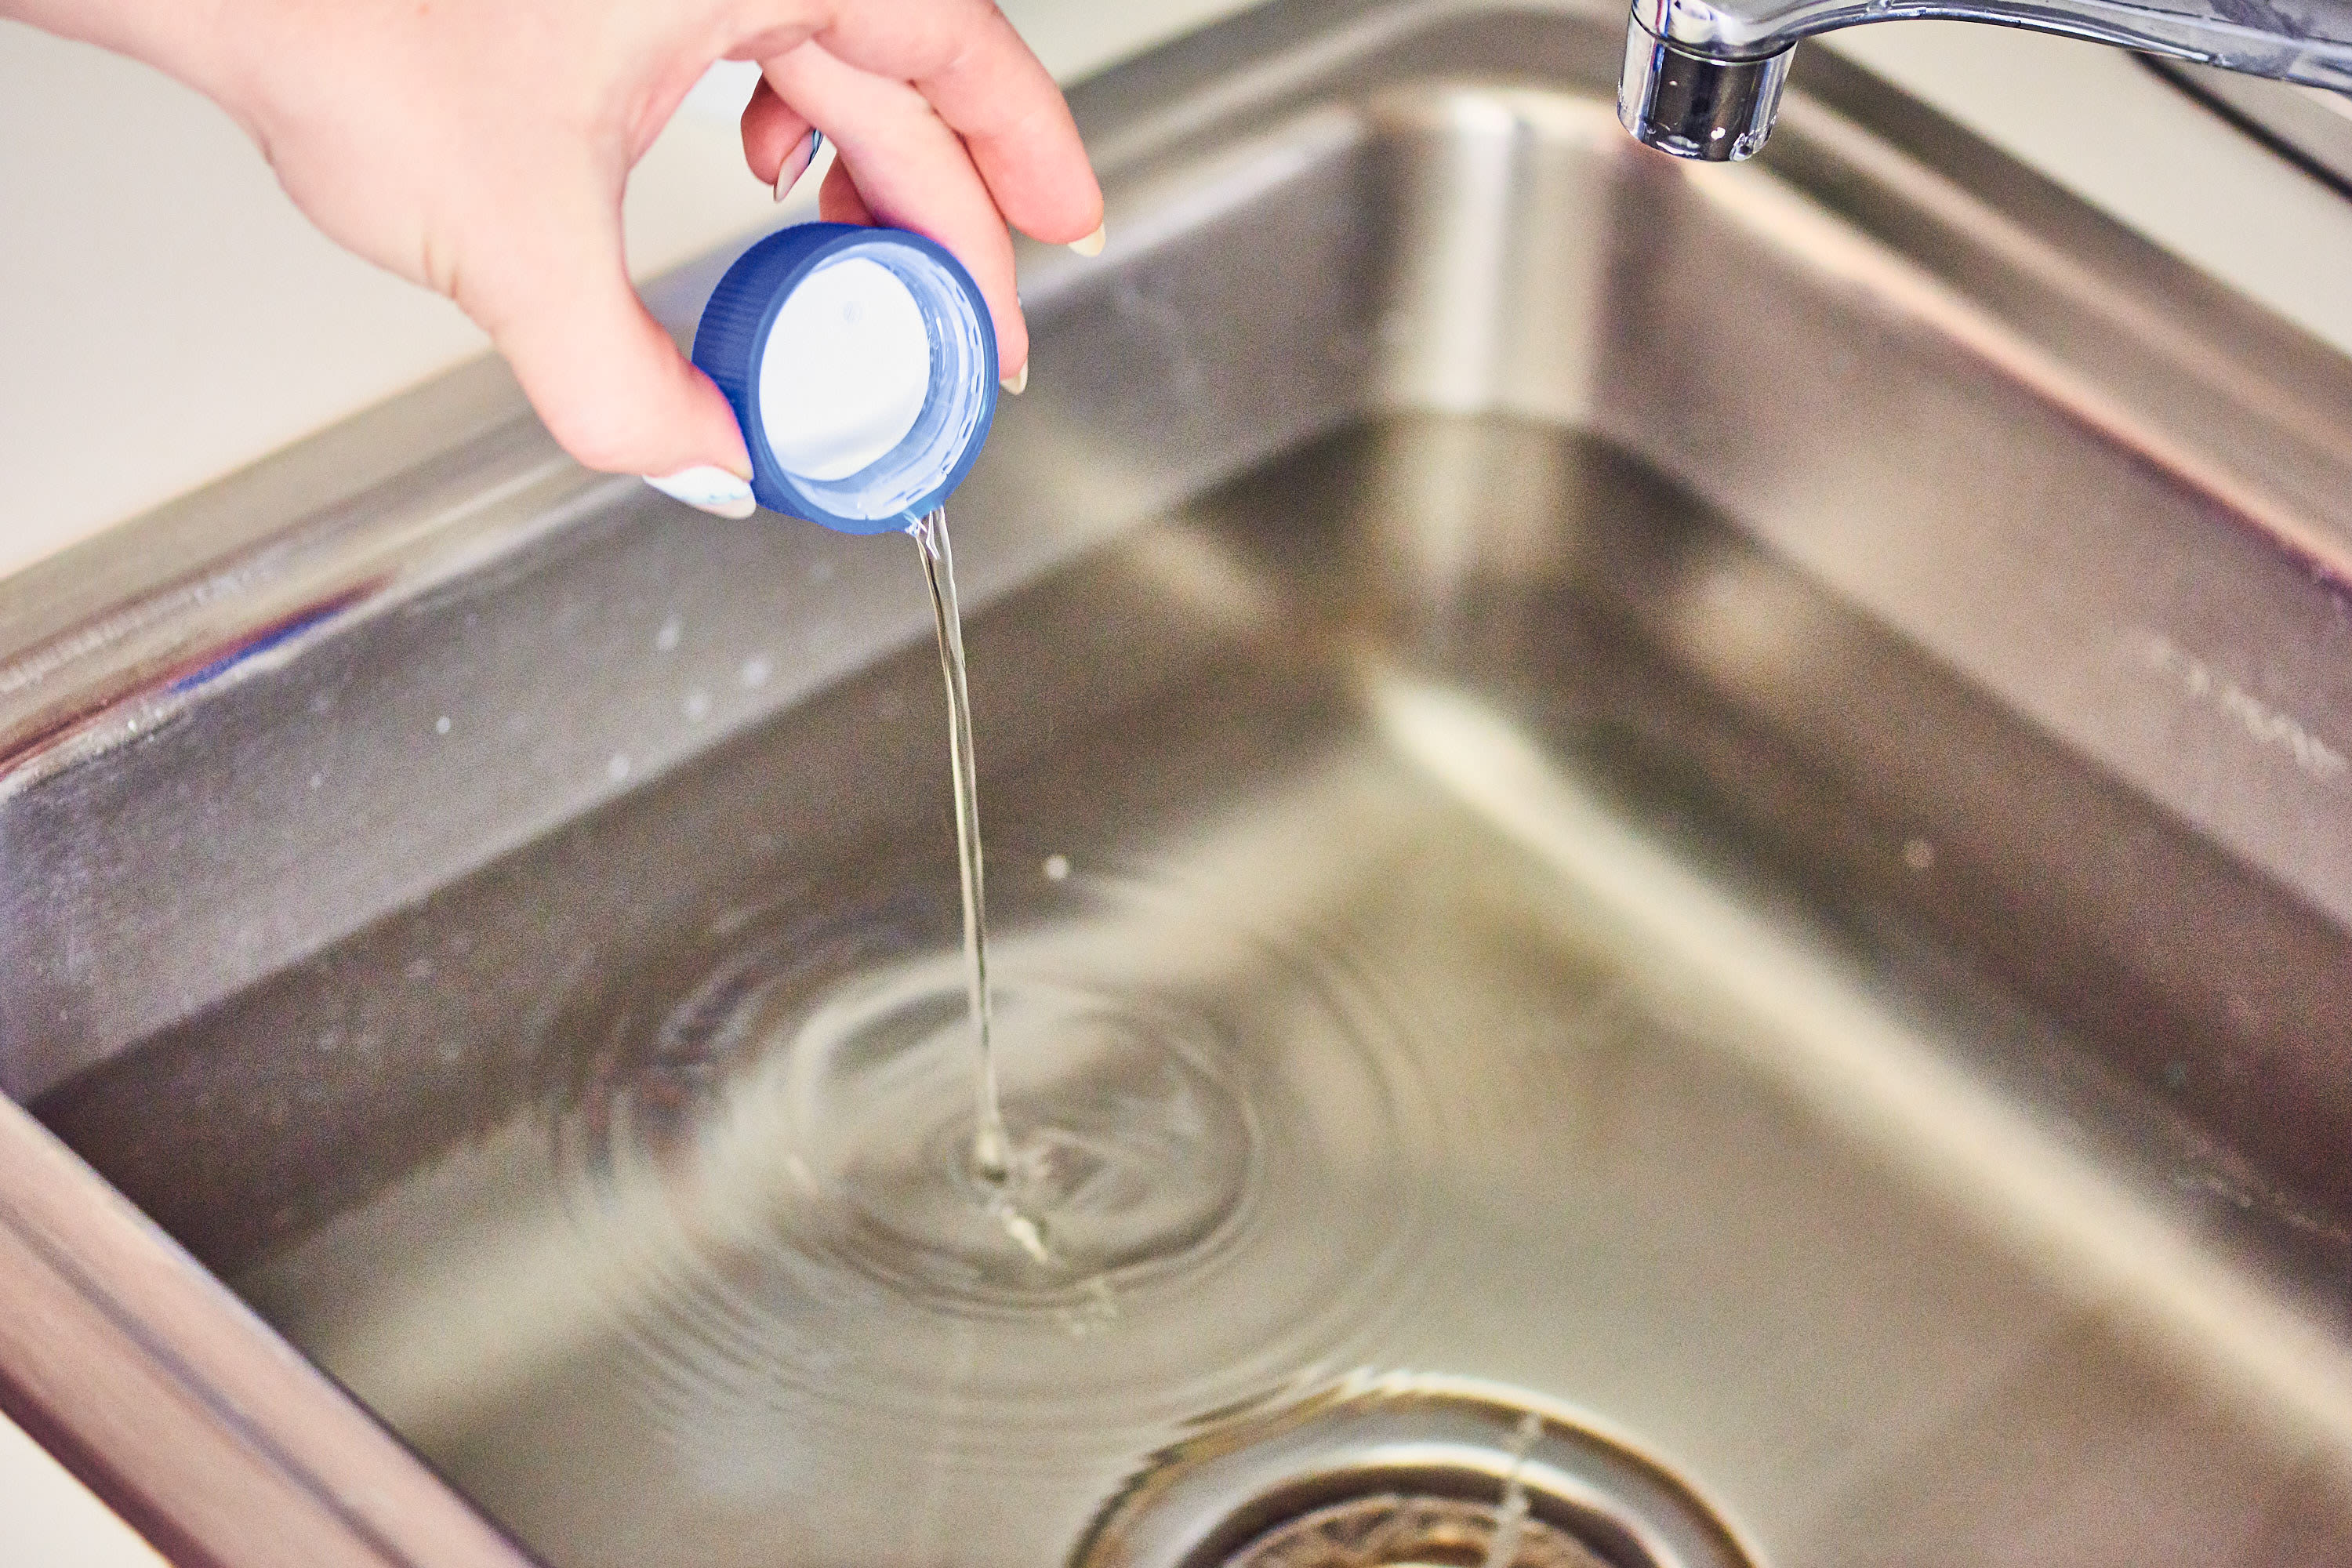 using bleach in kitchen sink